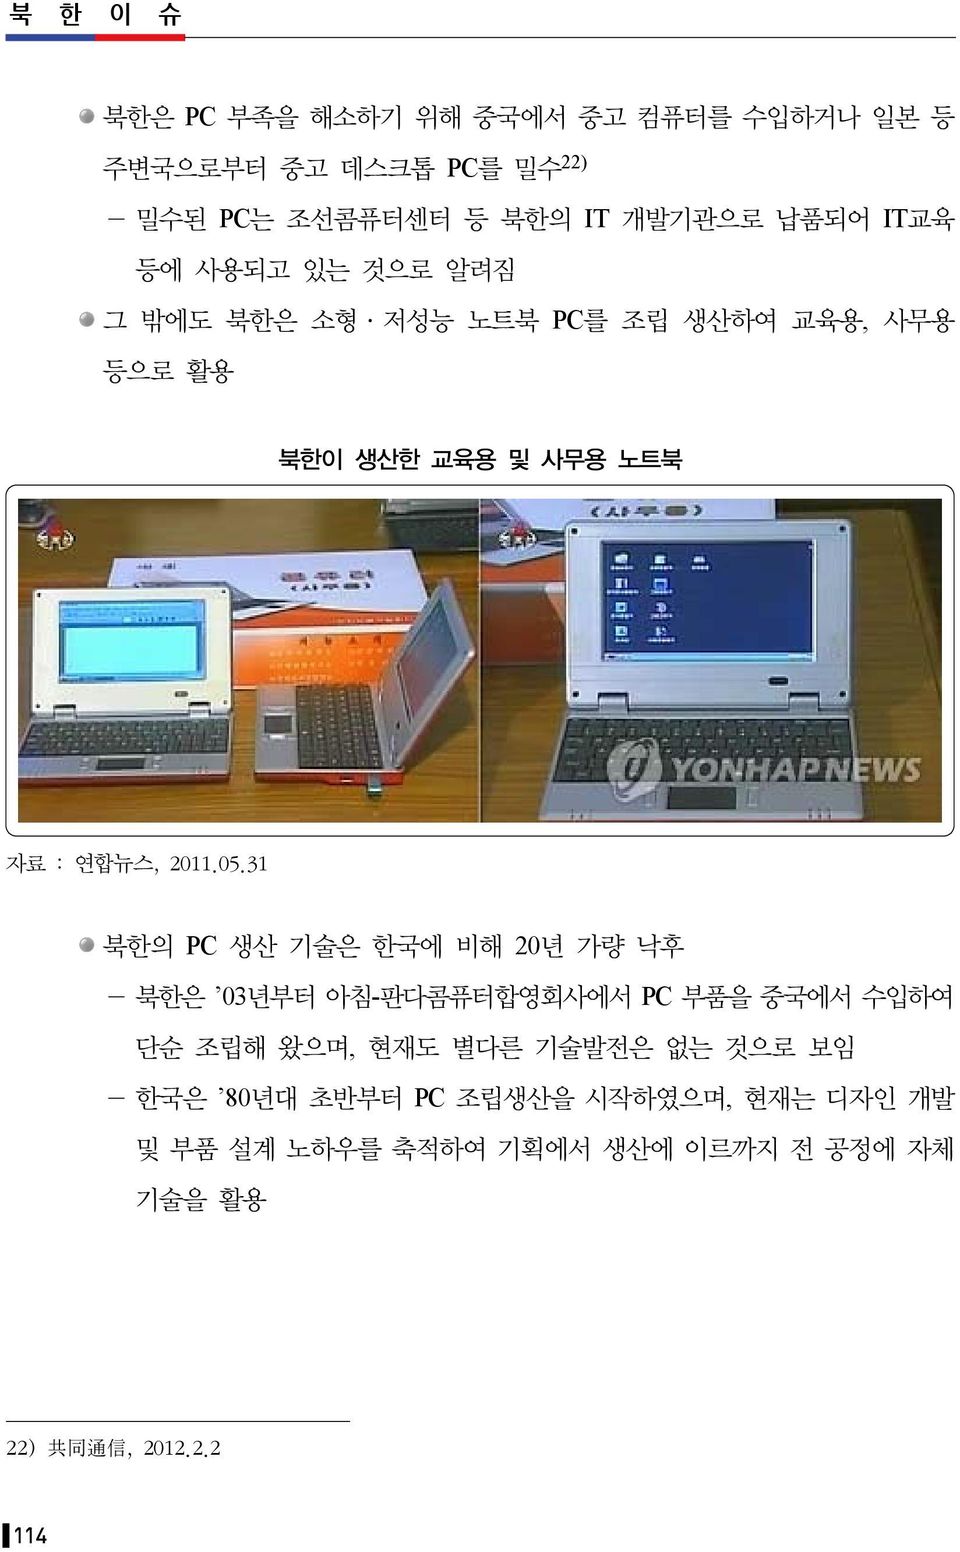 31 북한의 PC 생산 기술은 한국에 비해 20년 가량 낙후 - 북한은 03년부터 아침-판다콤퓨터합영회사에서 PC 부품을 중국에서 수입하여 단순 조립해 왔으며, 현재도 별다른 기술발전은 없는 것으로 보임